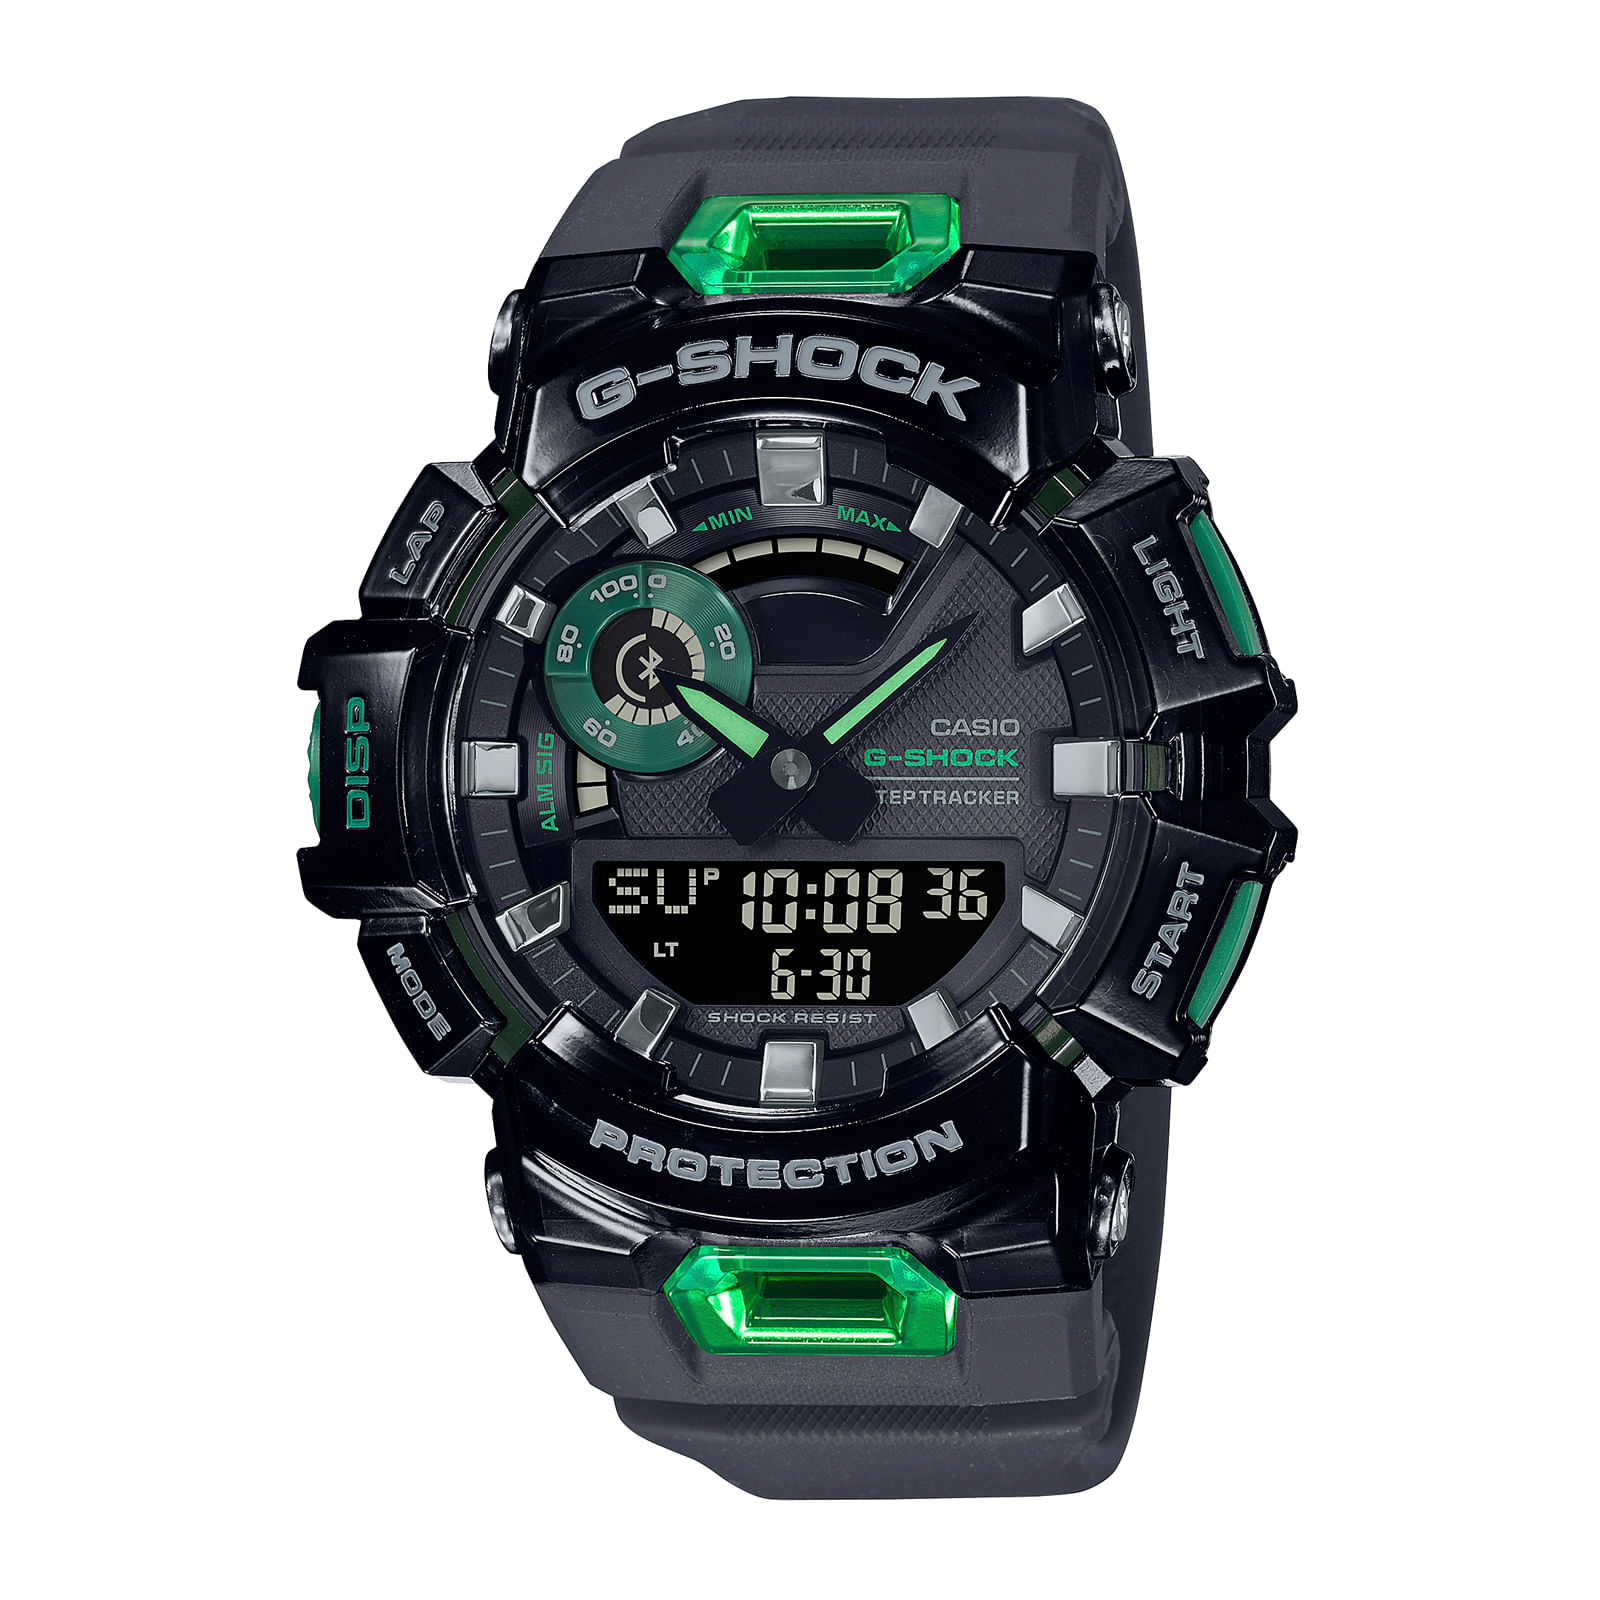 Reloj G-SHOCK GBA-900-4A Resina Hombre Coral - Btime